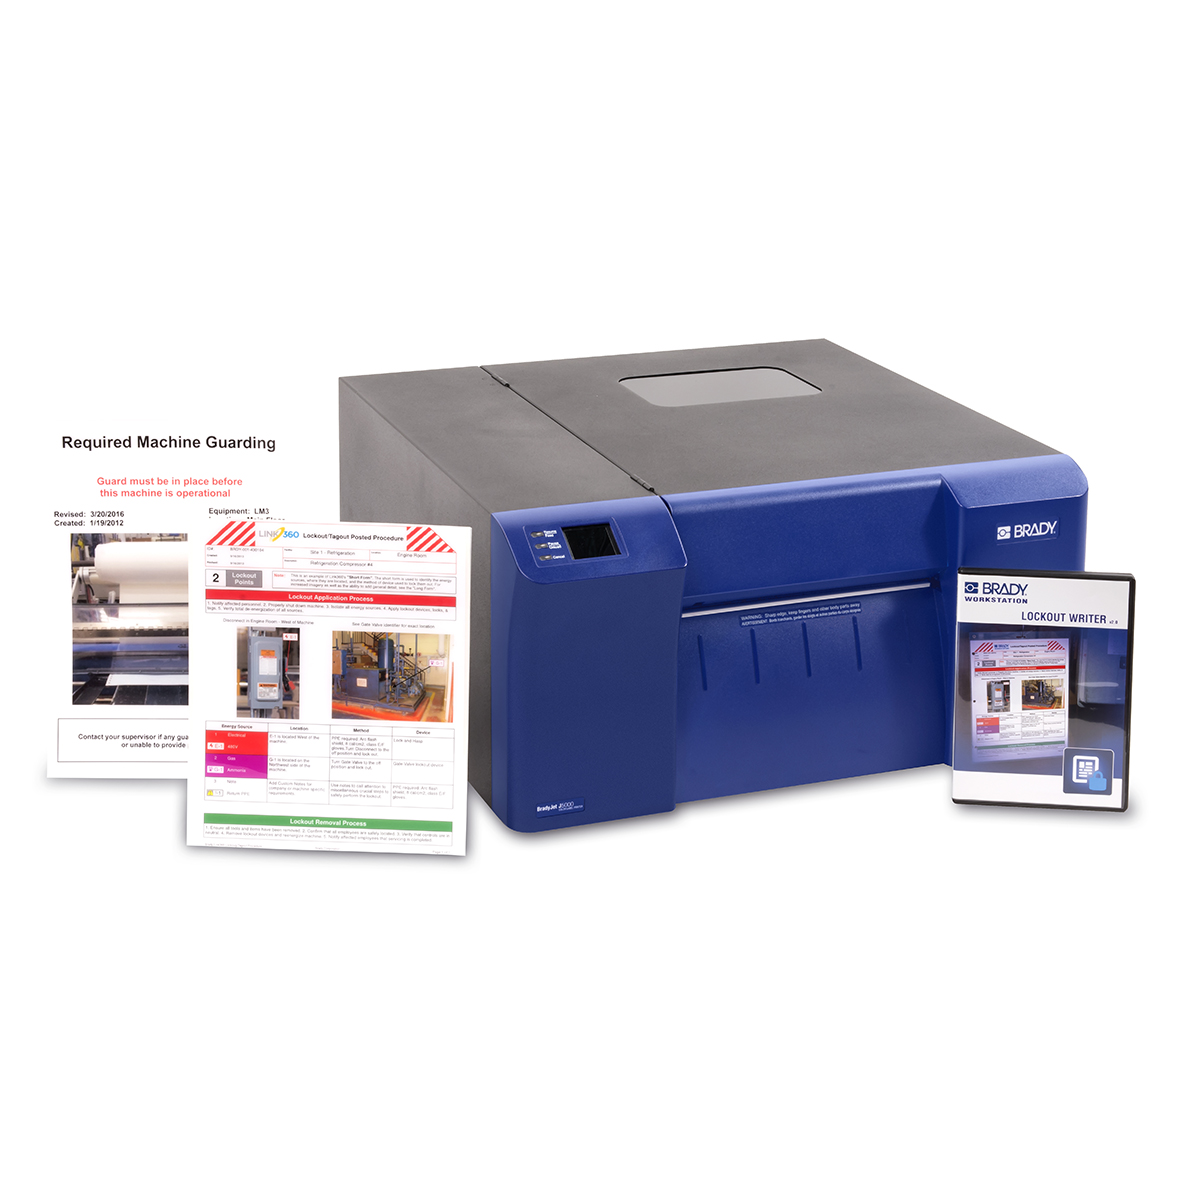 Imprimante BradyJet J5000 - Version EU avec application Rédacteur de consignation de Brady Workstation sur CD